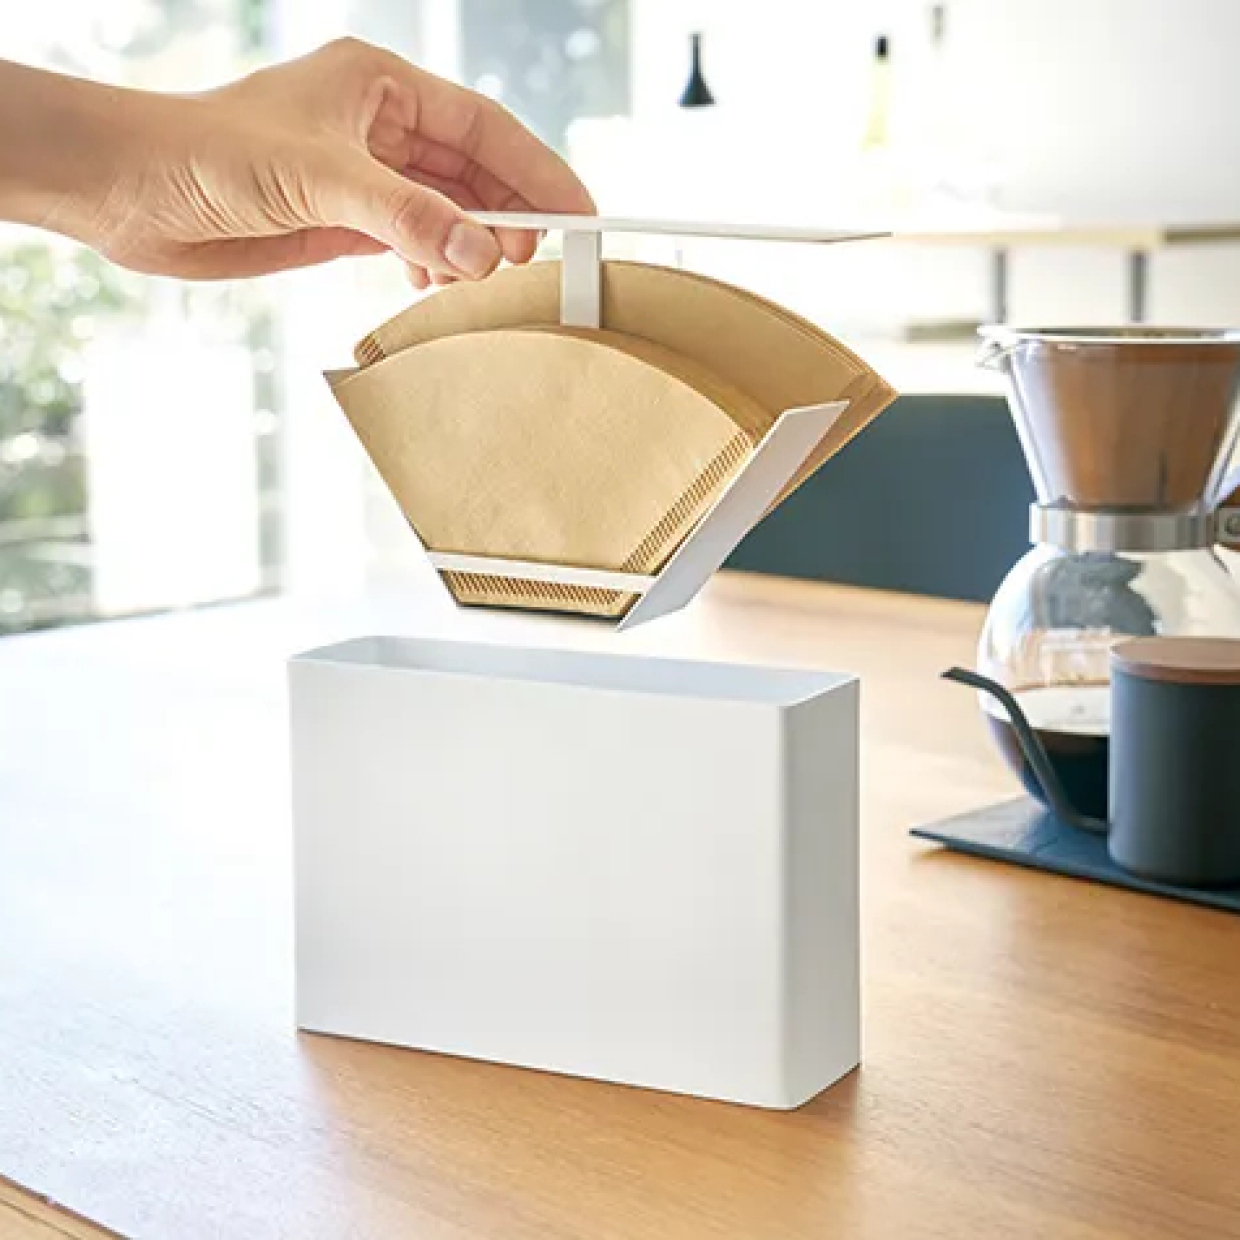  コーヒーフィルターホルダーは「衛生的でさっと取り出せて、おしゃれなもの」がいい！賢く収納できるケース3選 